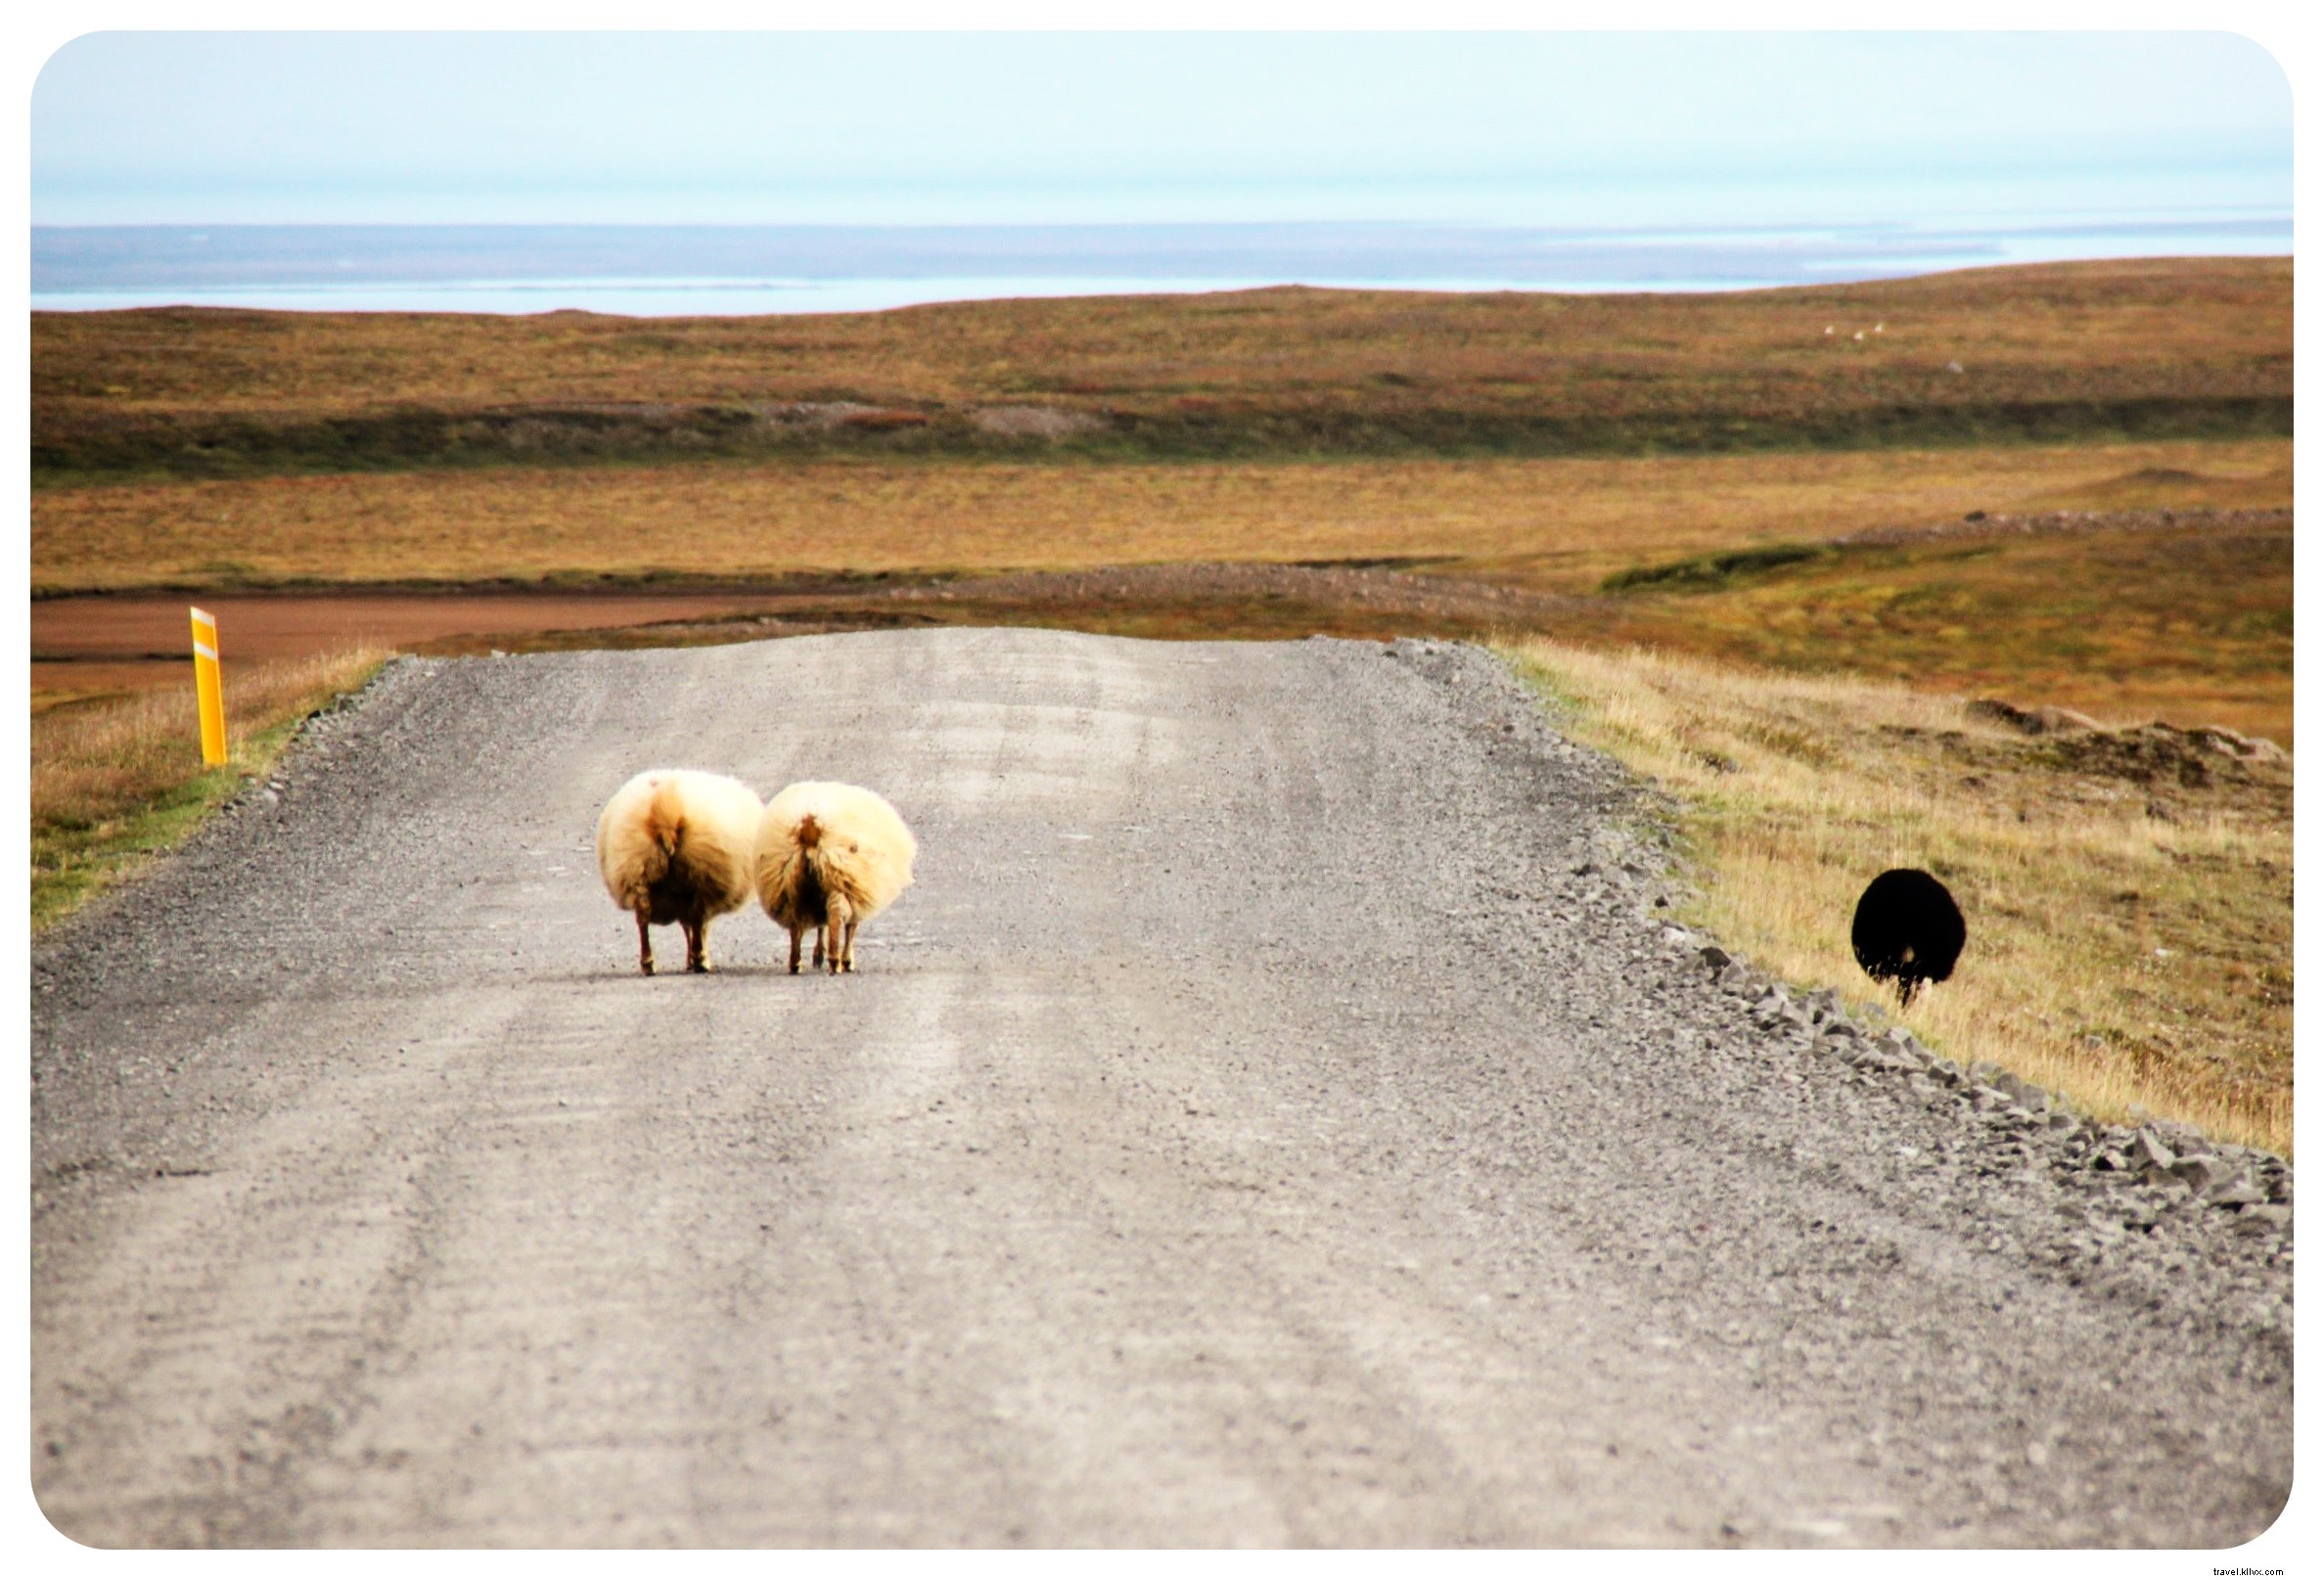 Três razões pelas quais uma viagem rodoviária é a melhor maneira de ver a Islândia